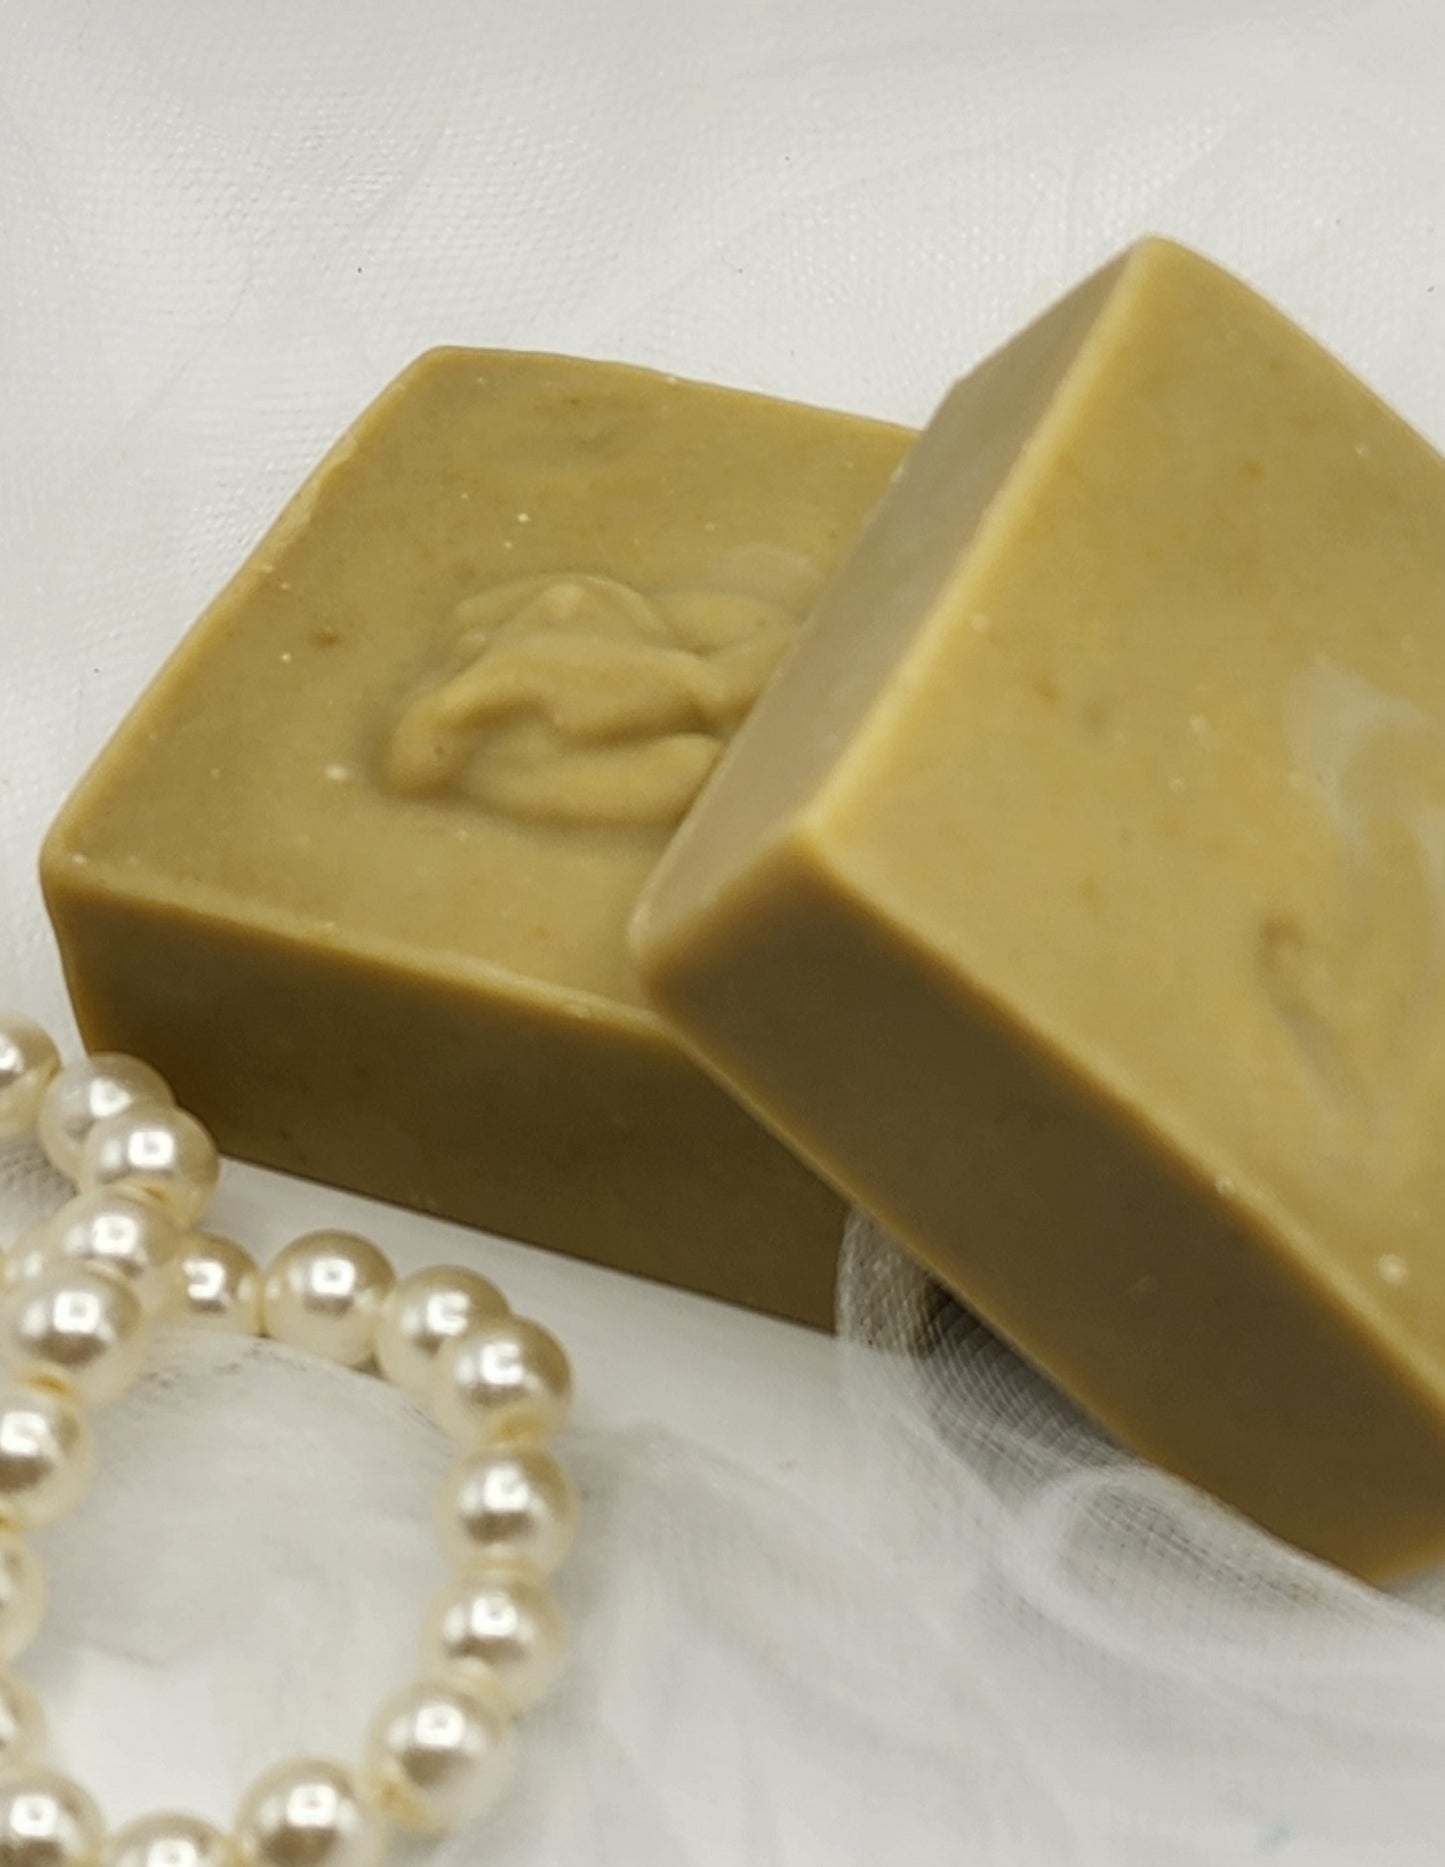 AVOCADO & GREEN CLAY Facial Soap / Bar Soap / Face Soap / Facial Soaps/ All Natural Facial Soaps